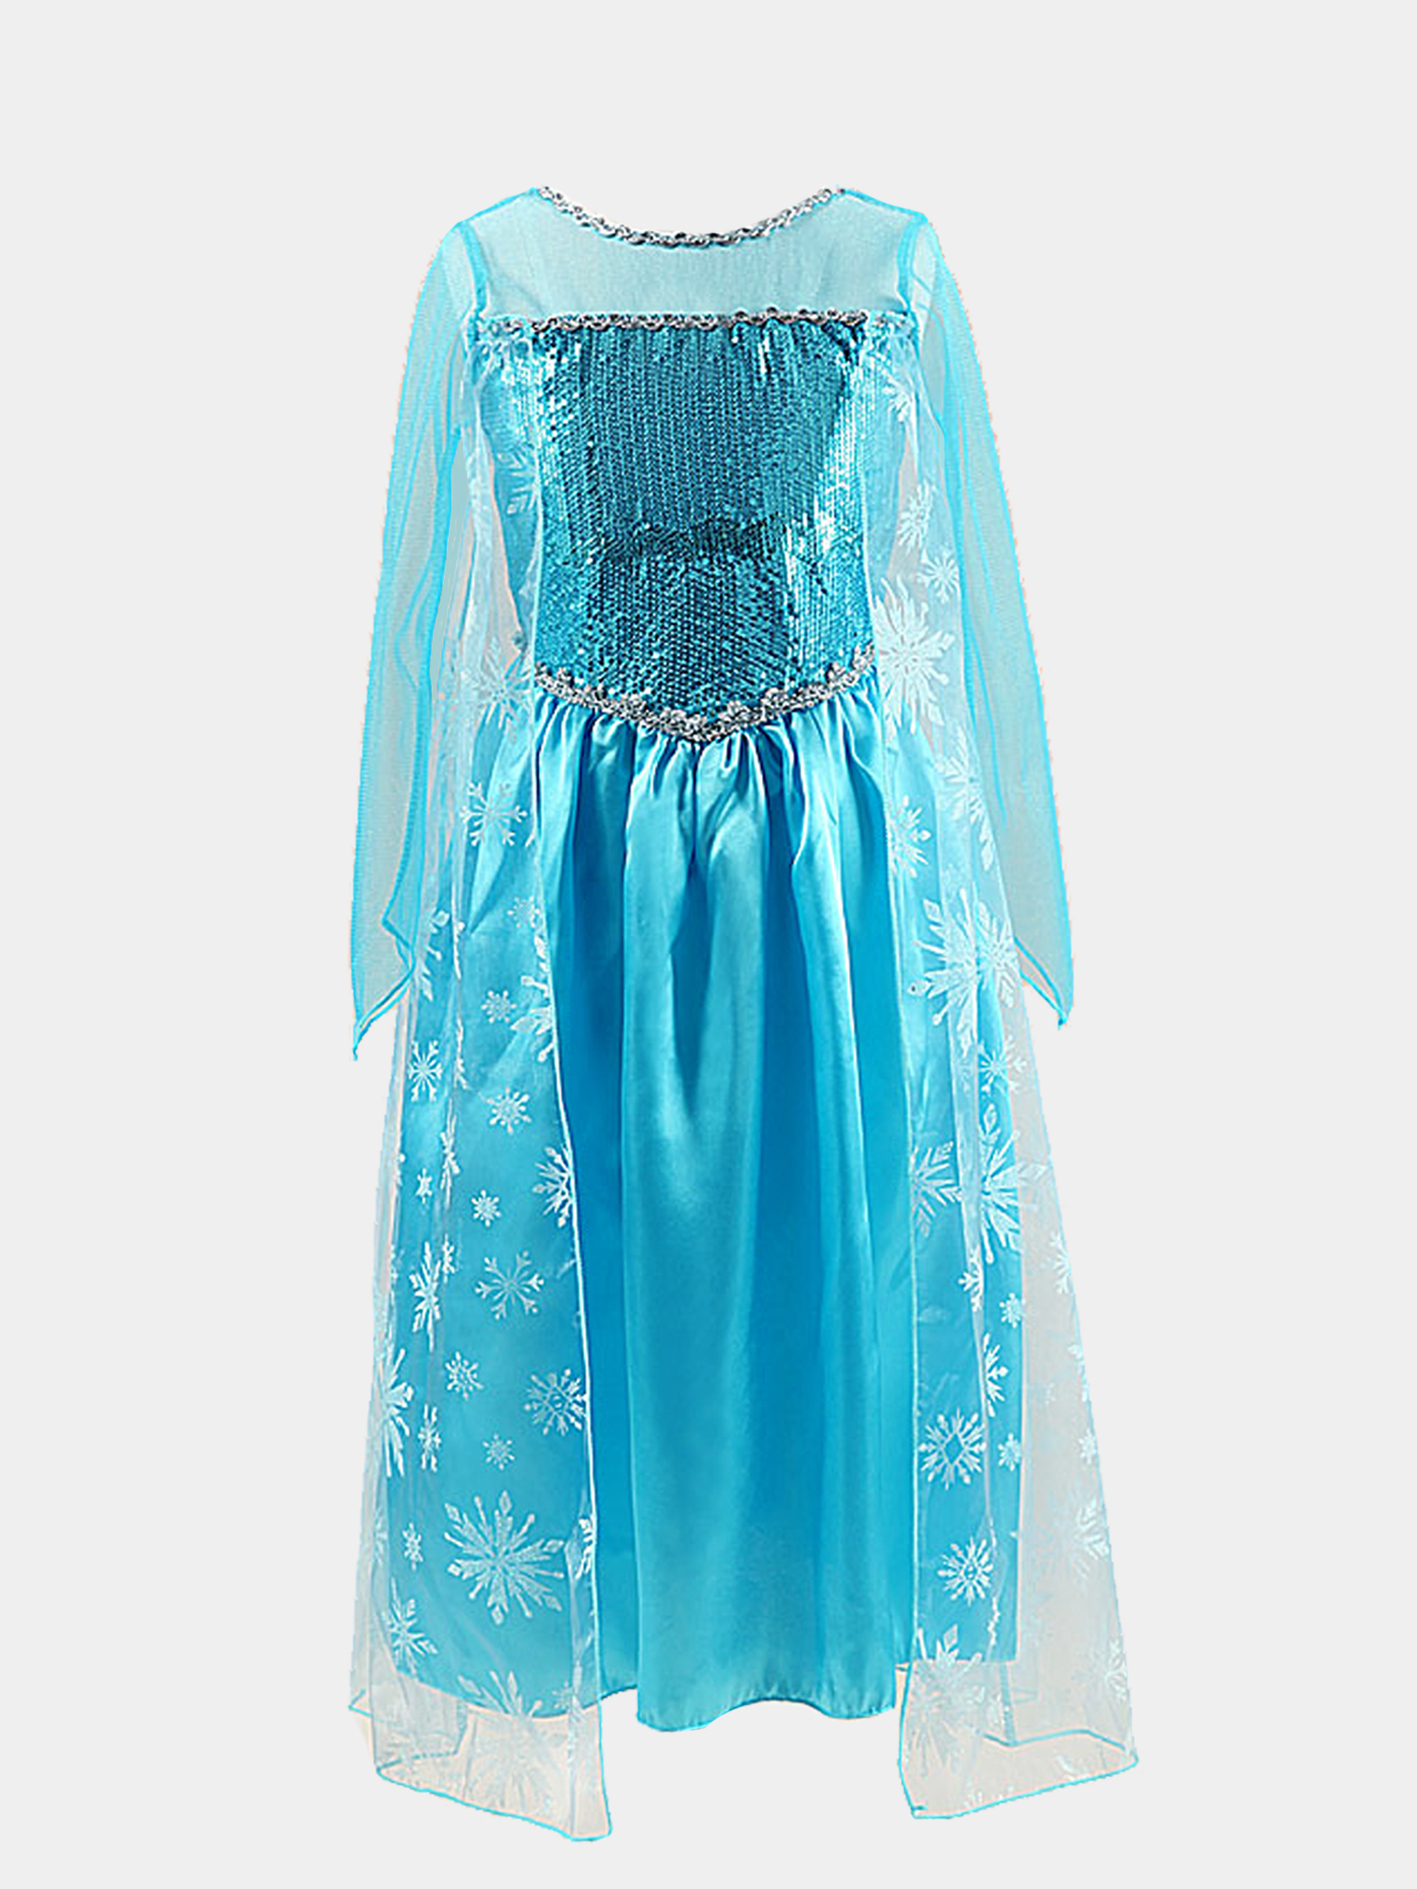 Карнавальное платье Frozen (Холодное сердце) платье Эльза